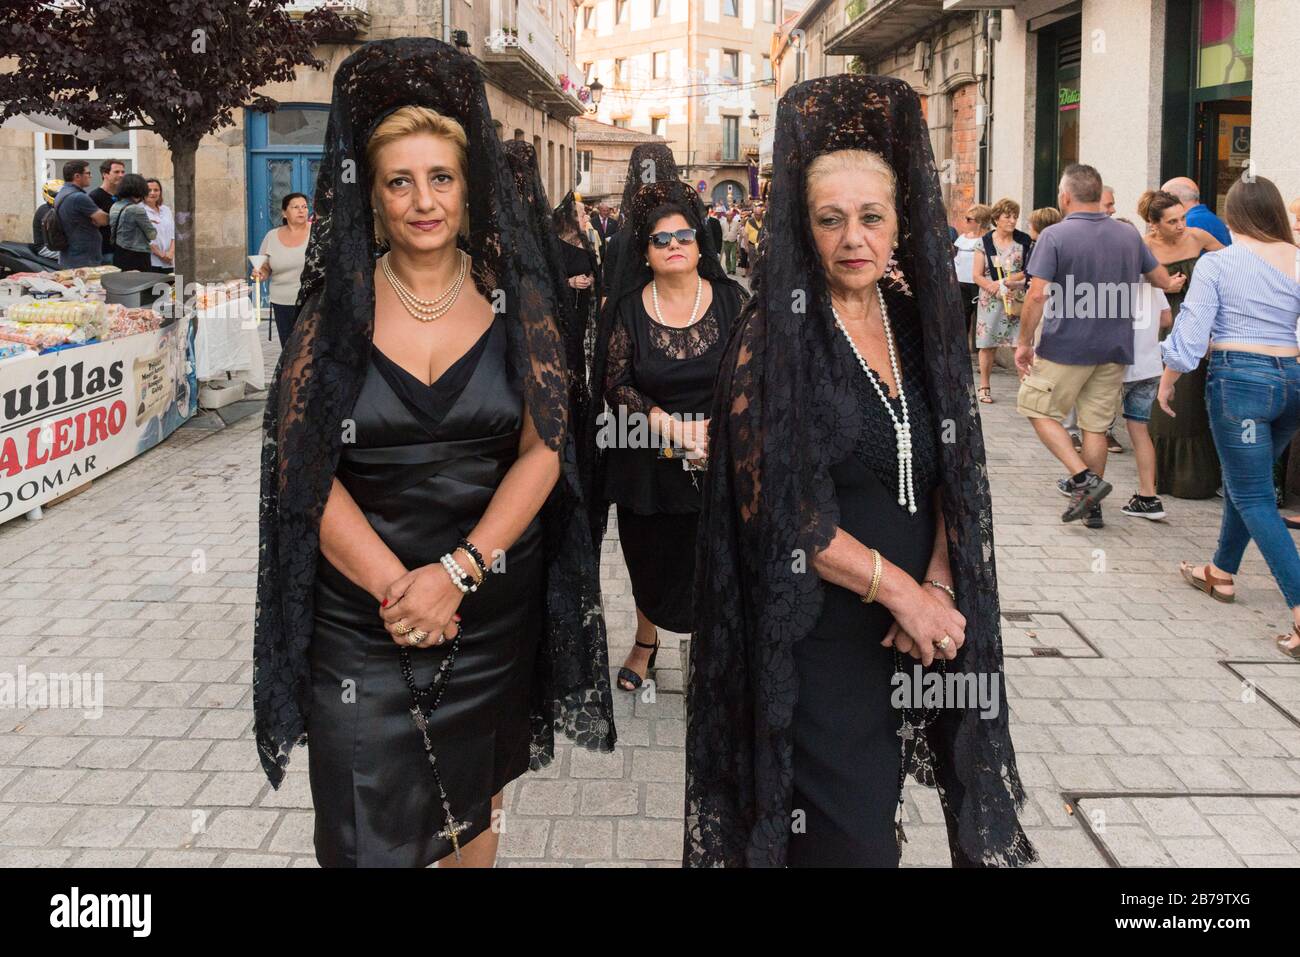 Donne che indossano abiti neri tradizionali e mantilla (veli di merletto), parte della processione religiosa durante Fiestas de Bouzas, Vigo. Foto Stock